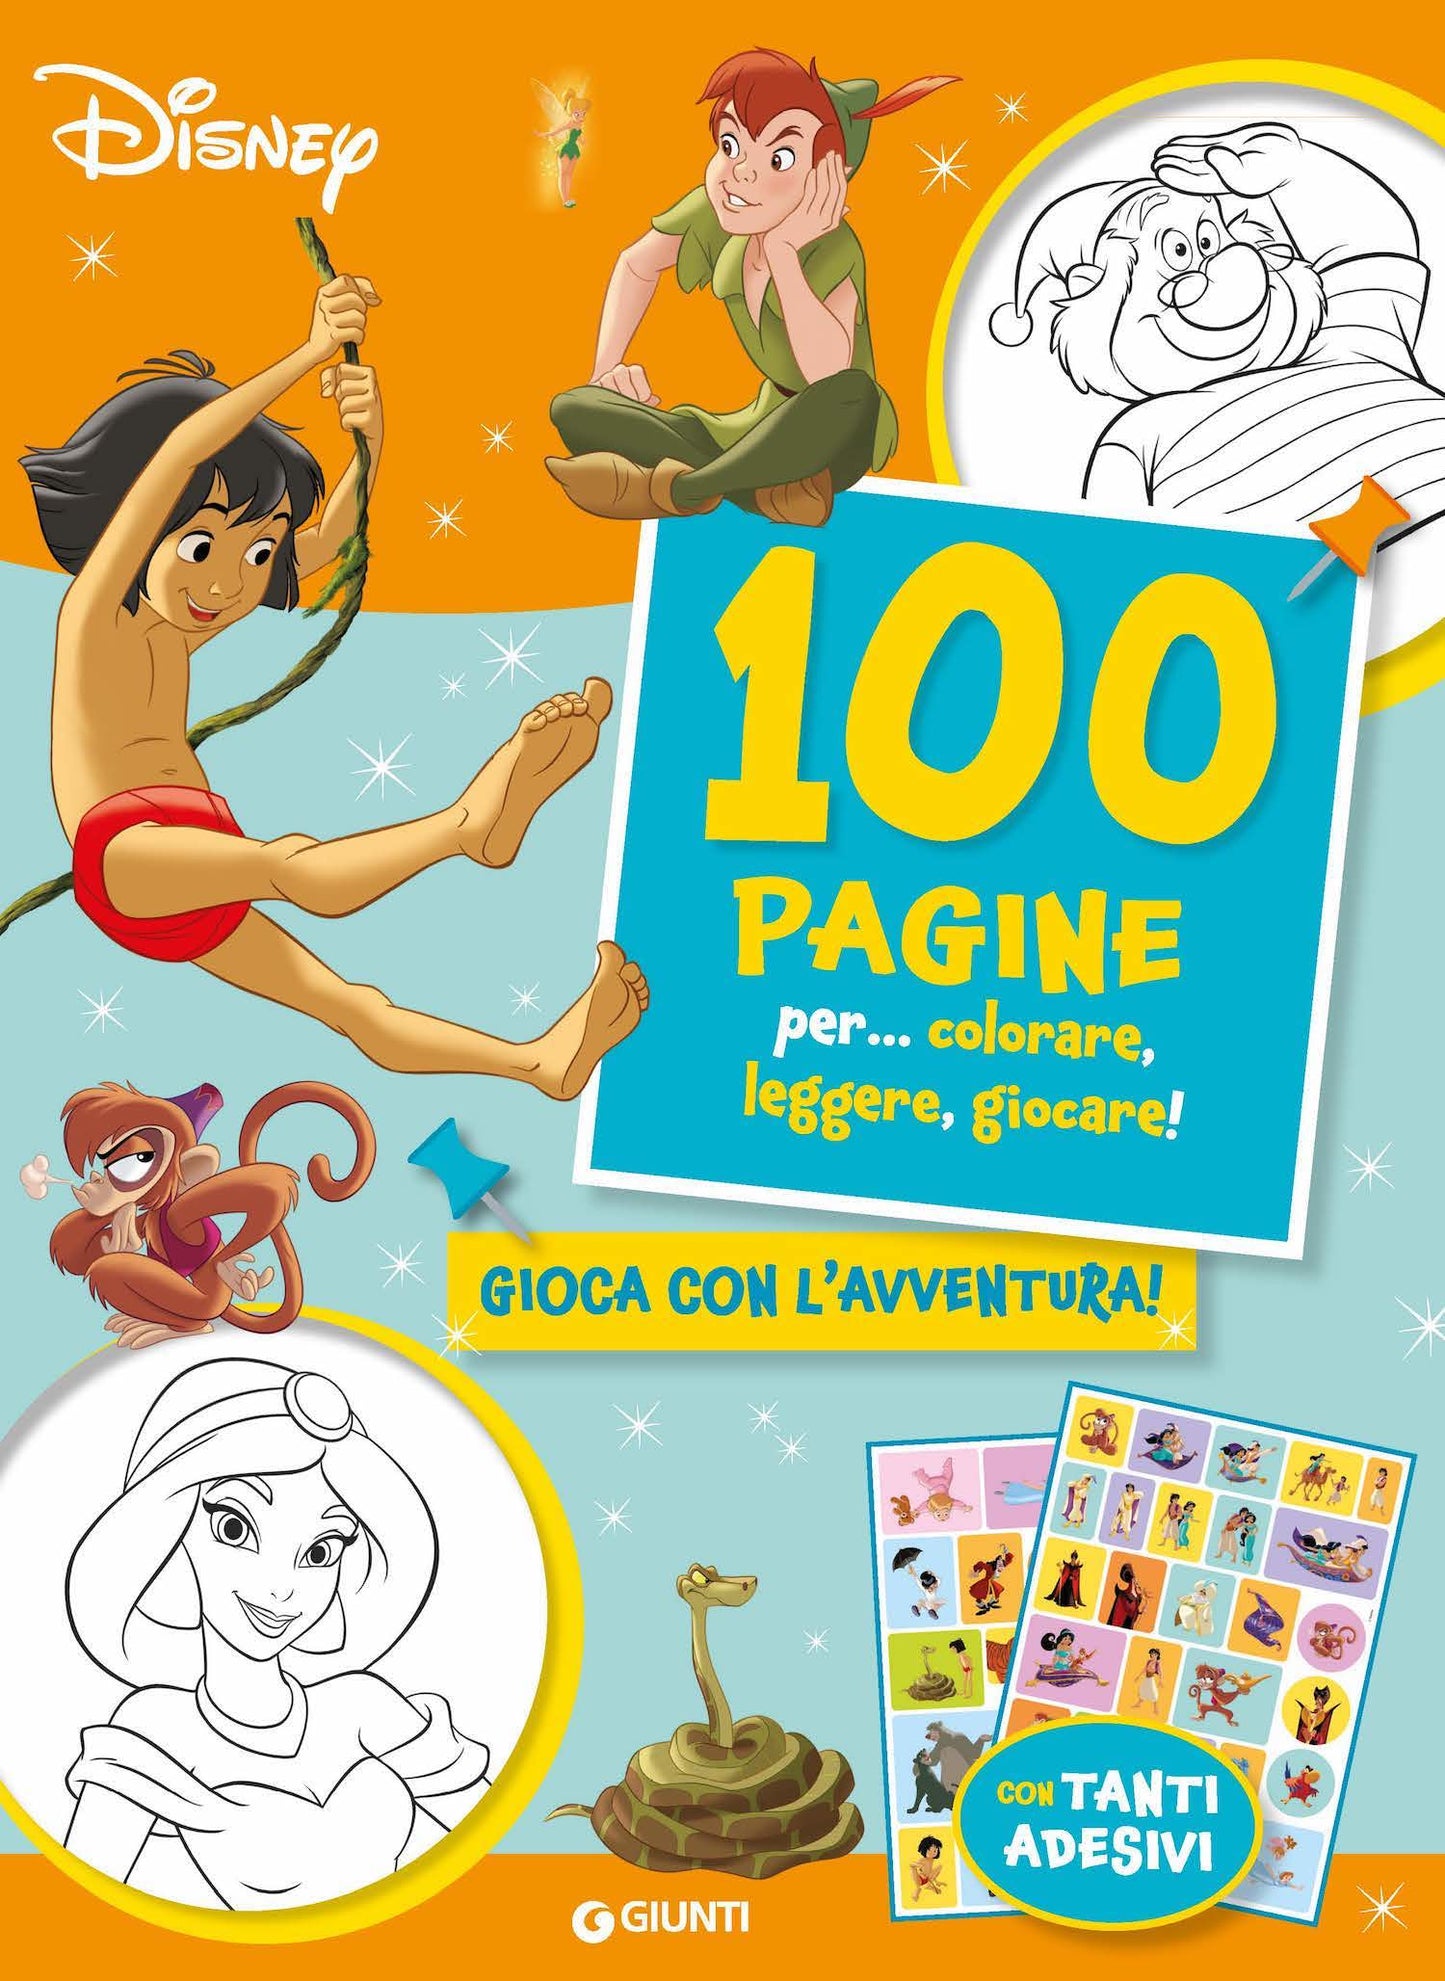 100 Pagine per... colorare, leggere, giocare! Gioca con l'avventura!. con tanti adesivi